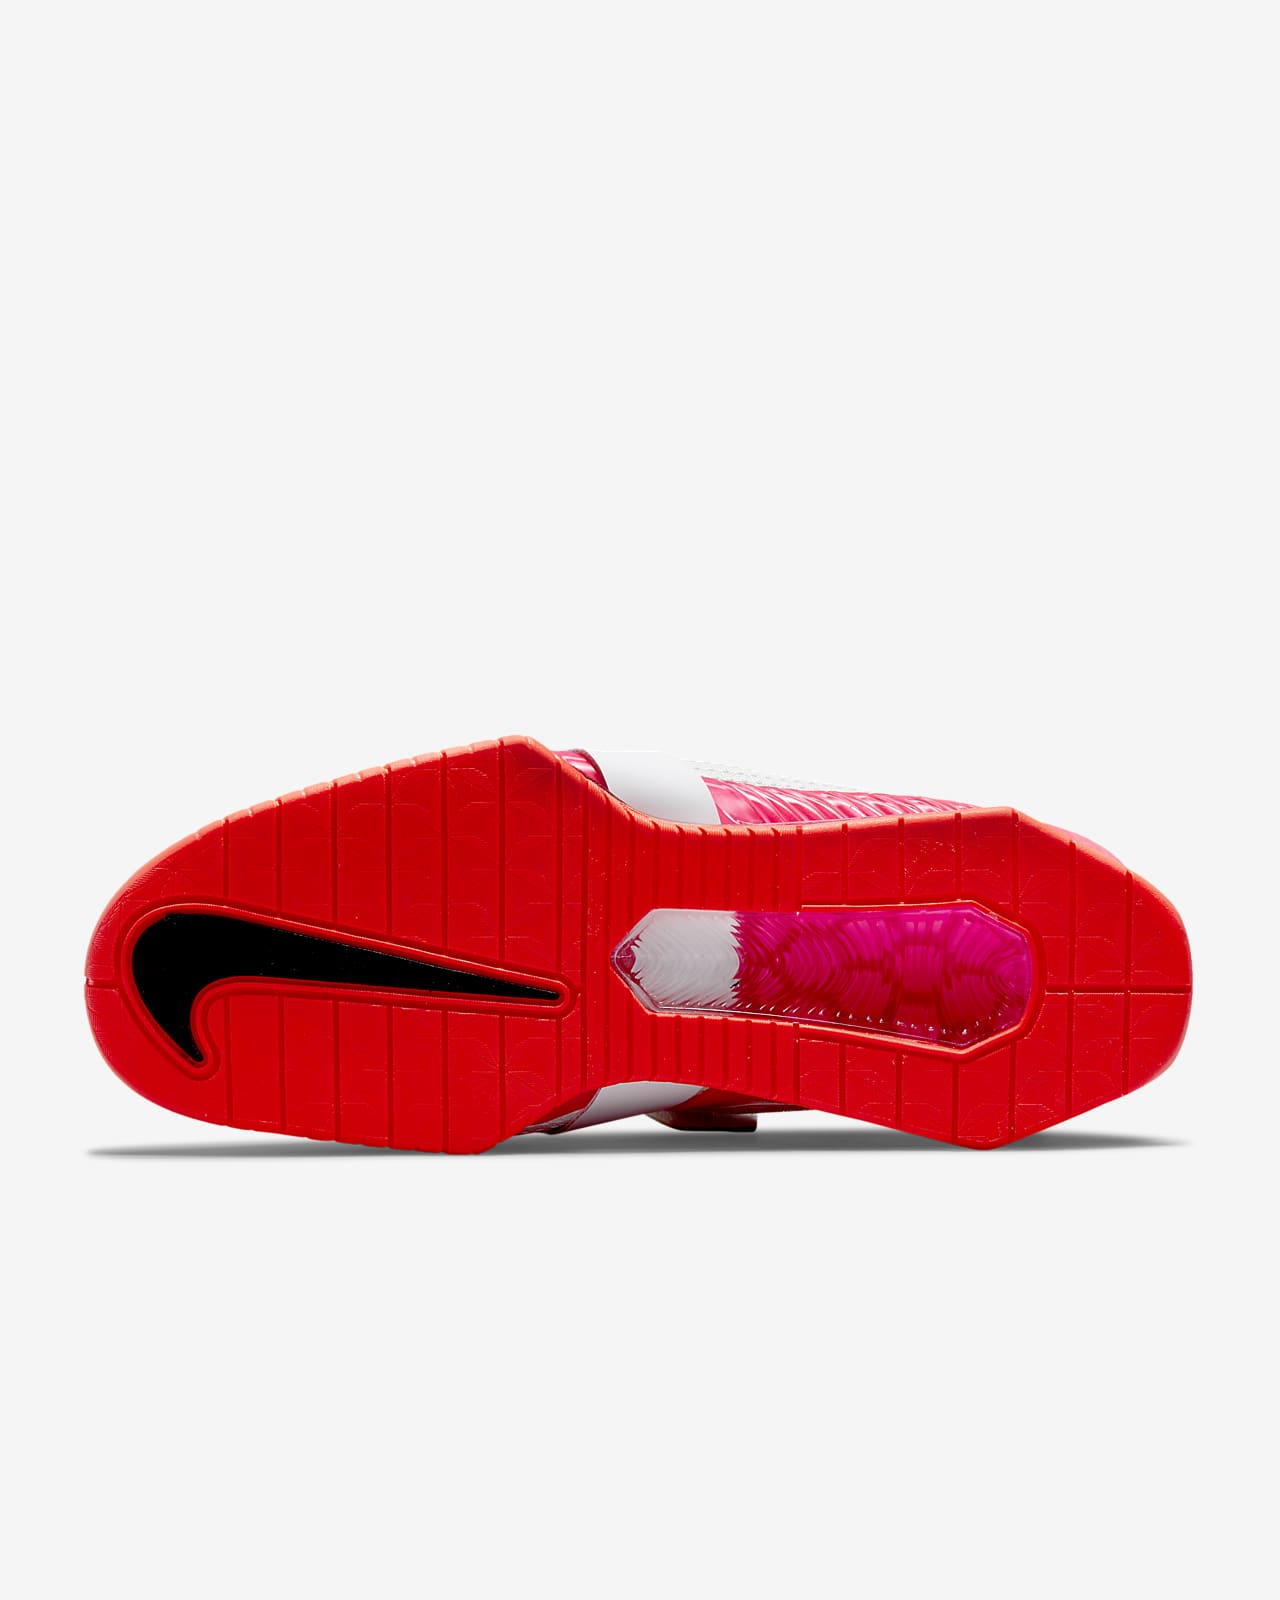 Calzado de Nike Romaleos 4 SE.